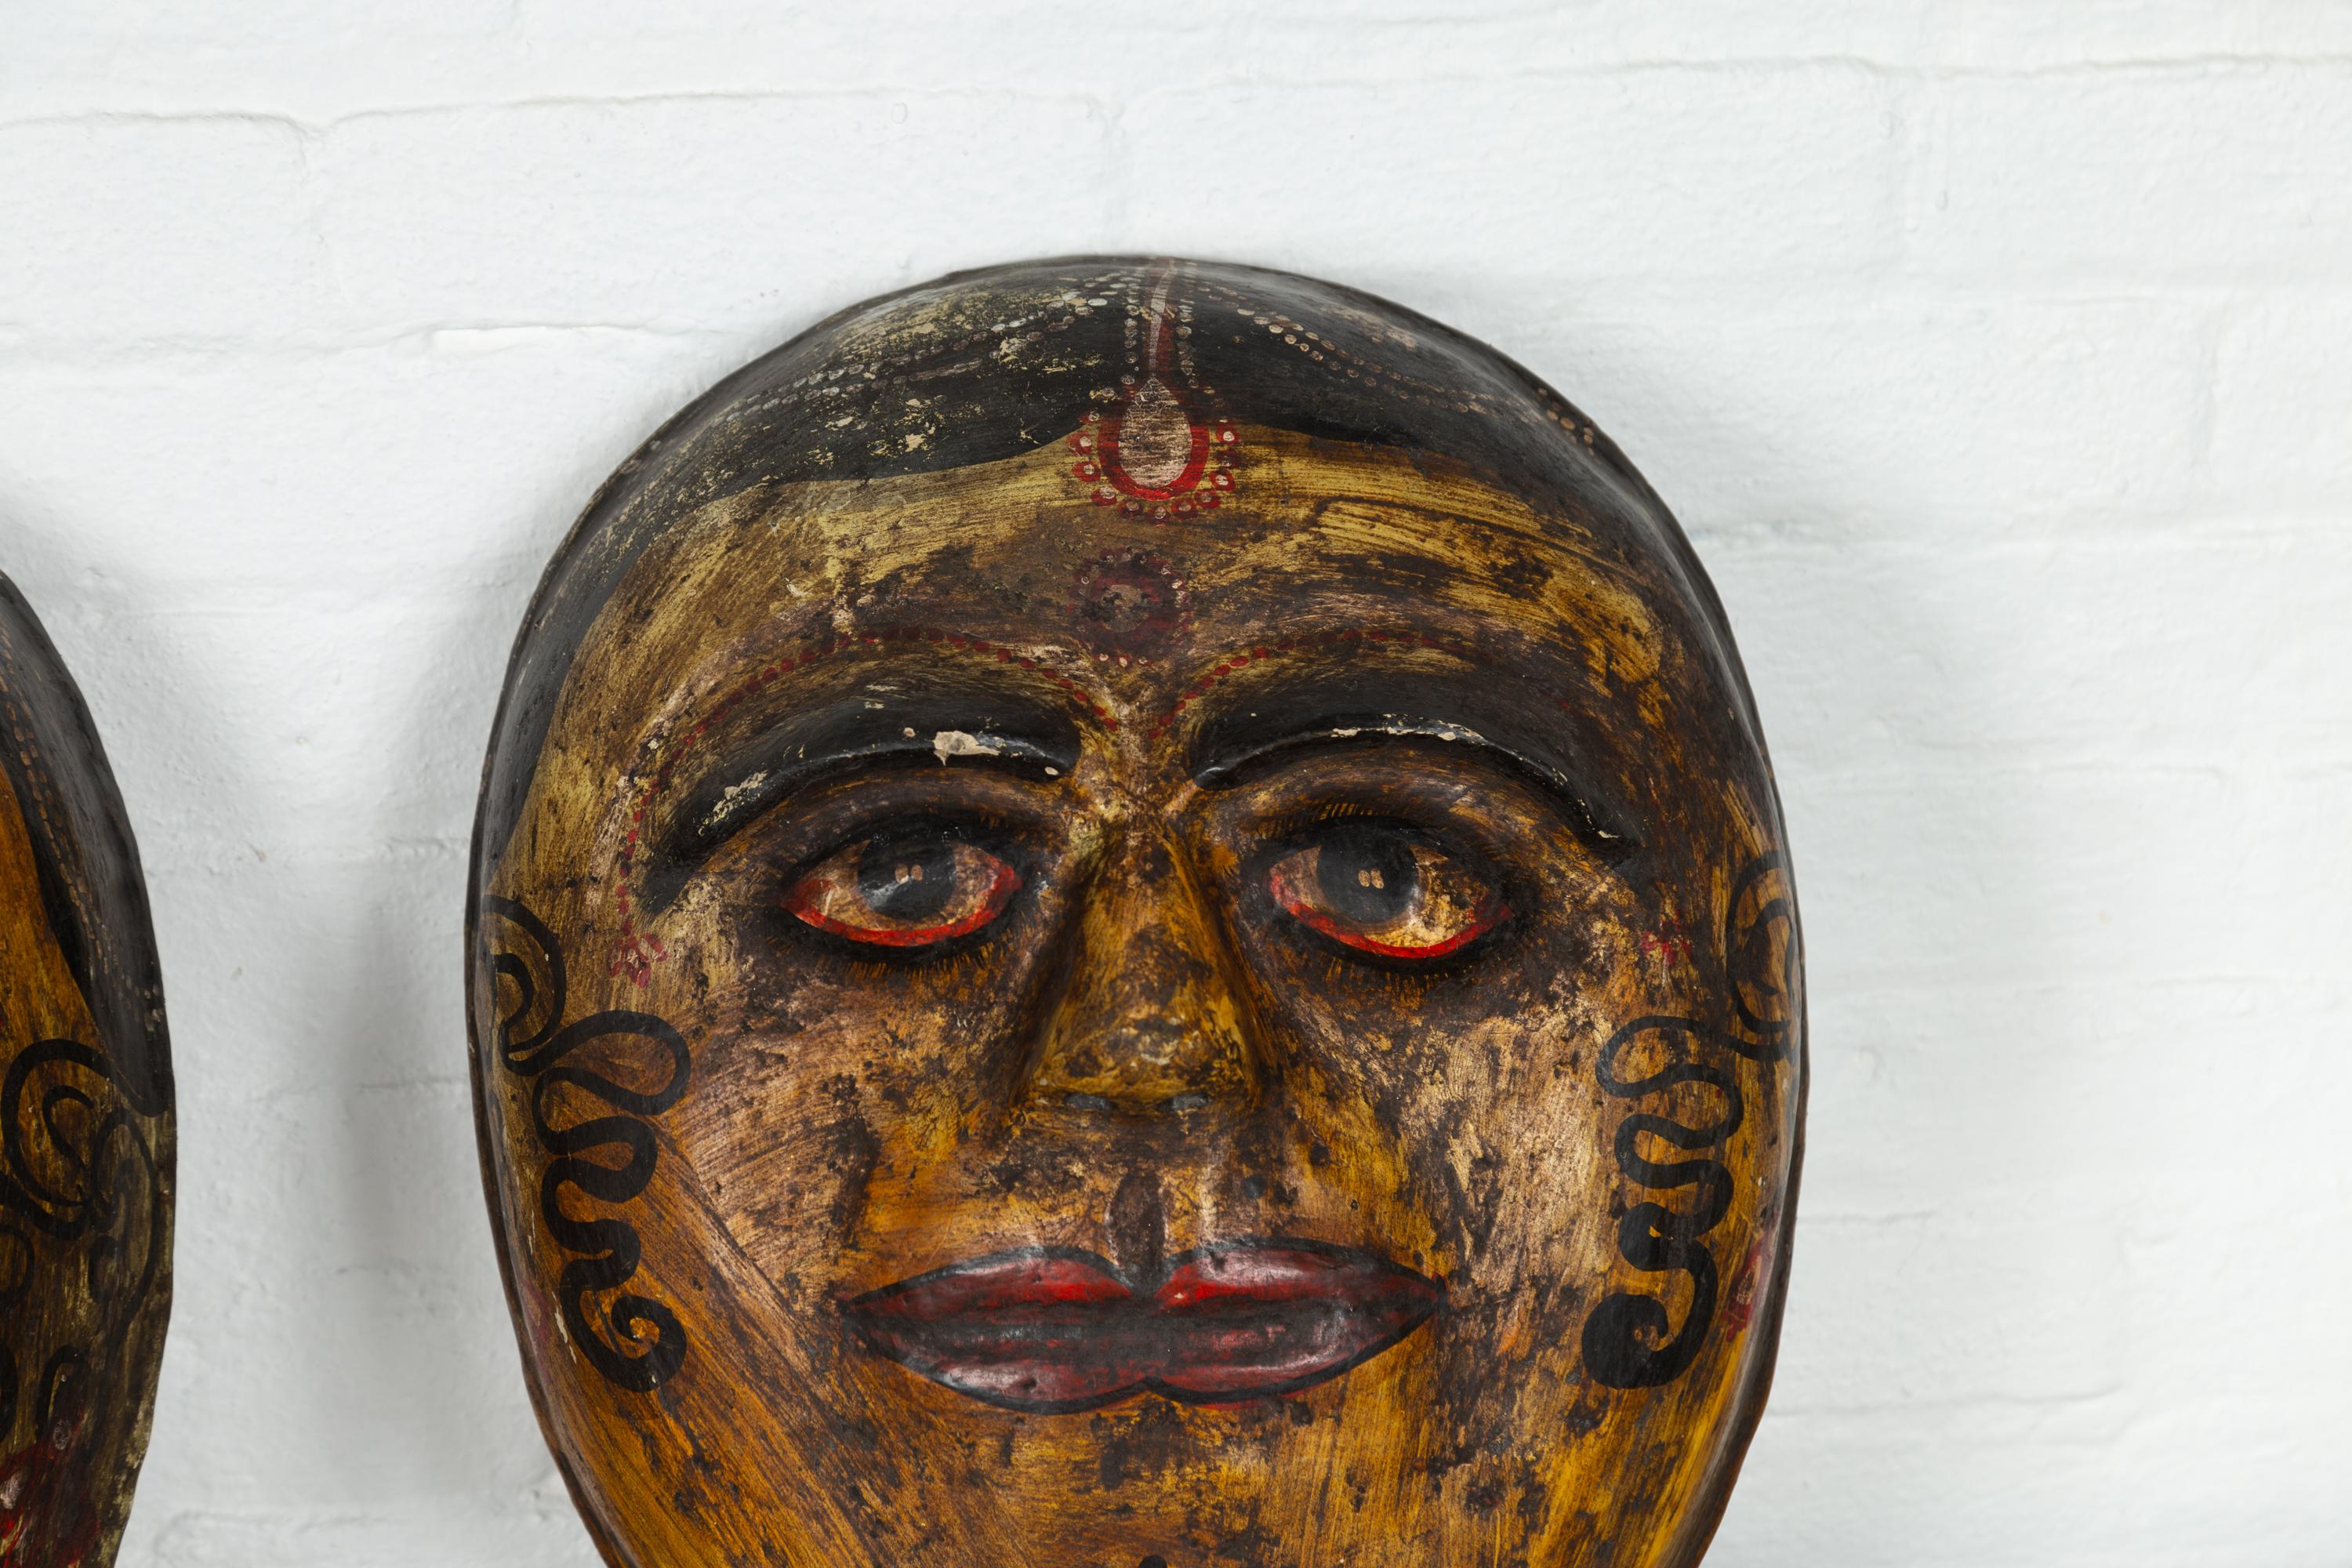 Other Two Antique Indian Papier-Mâché Hand Painted Face Masks Depicting Brides